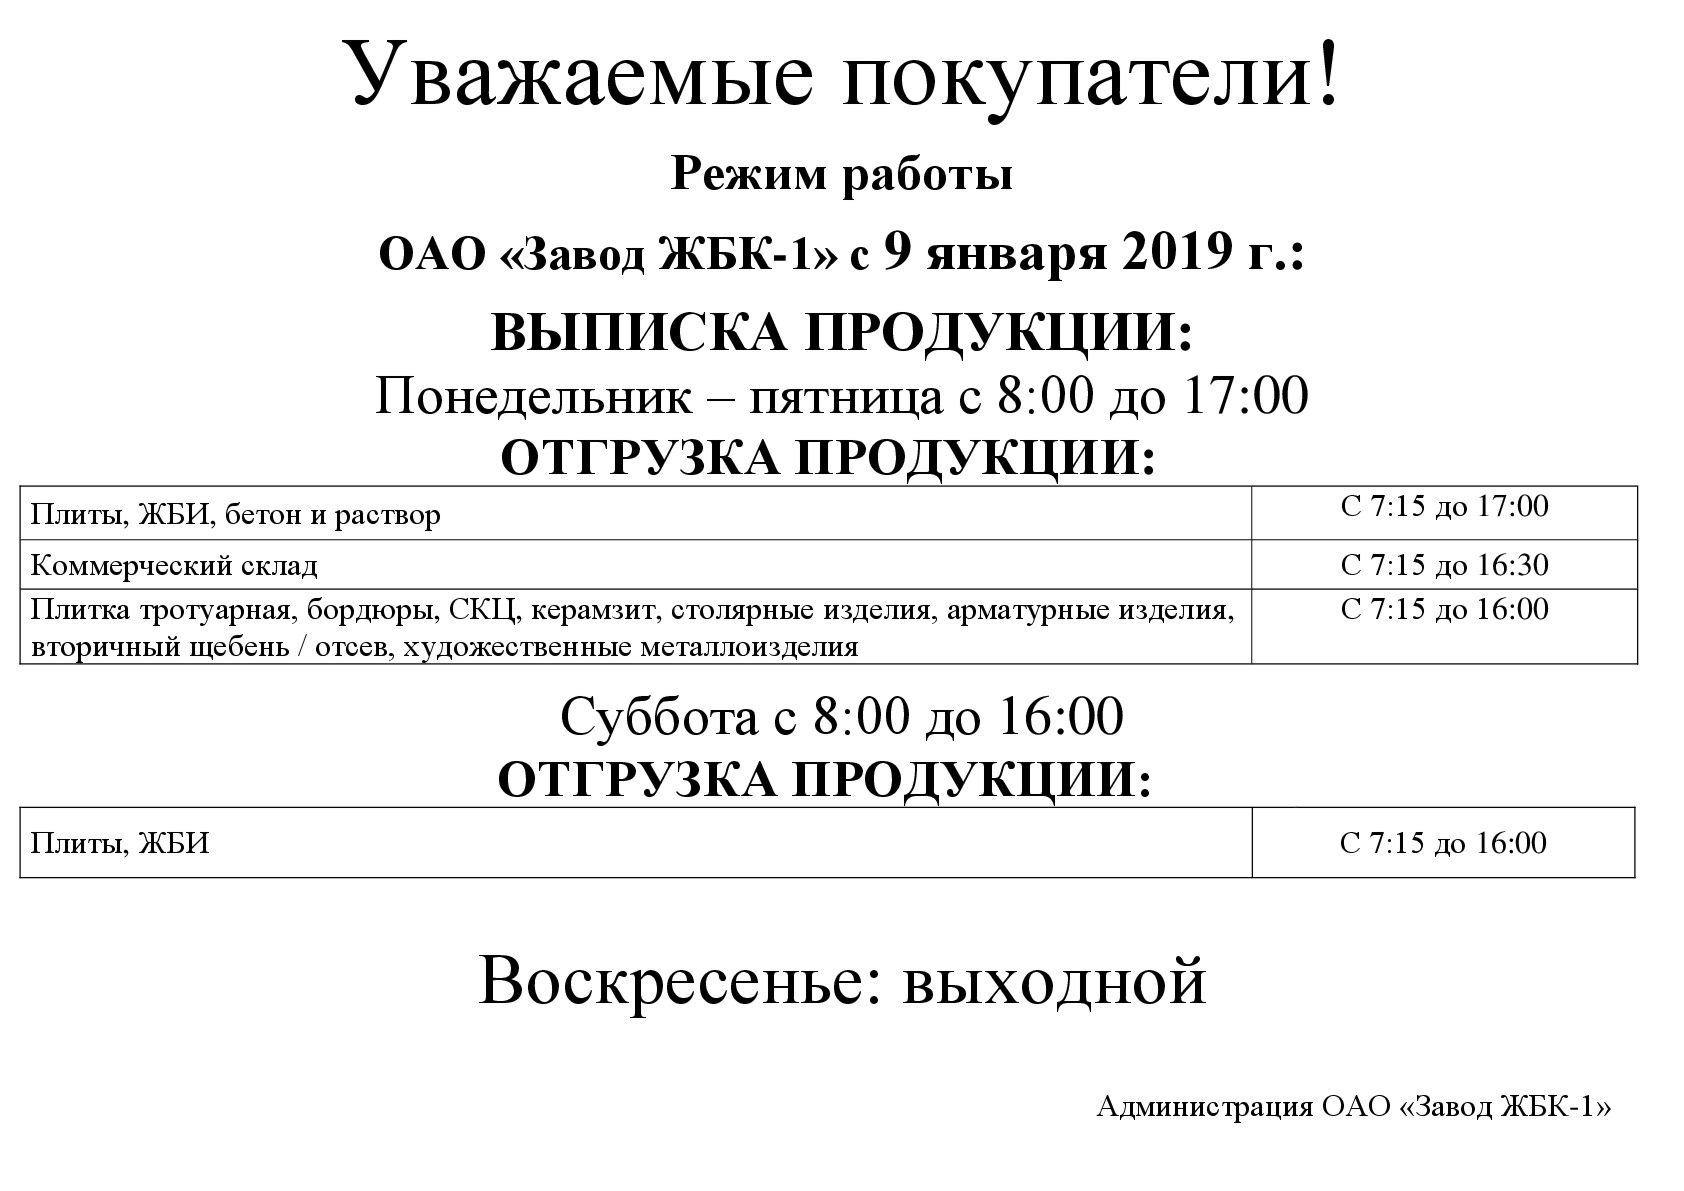 Режим работы ОАО "Завод ЖБК - 1"  с 9 января 2019